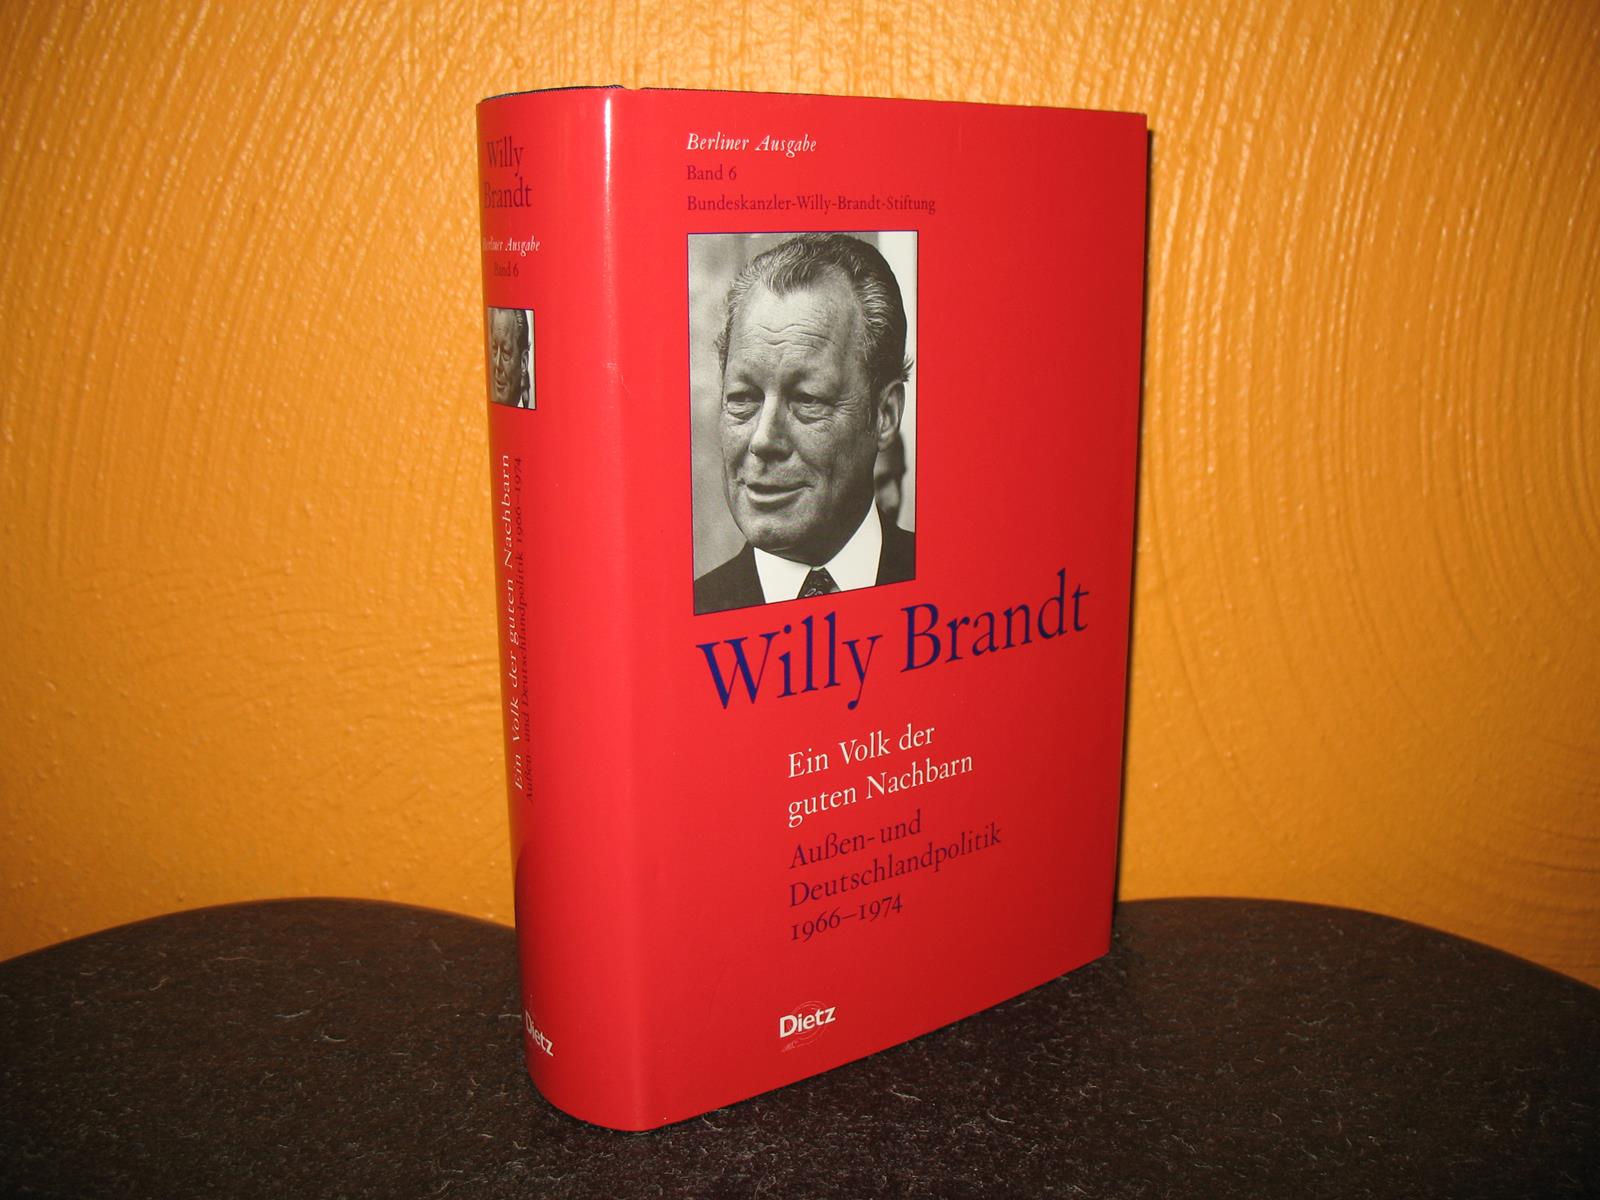 Ein Volk der guten Nachbarn: Außen- und Deutschlandpolitik 1966 - 1974. Bearb. von Frank Fischer; Berliner Ausgabe: Band 6; - Brandt, Willy